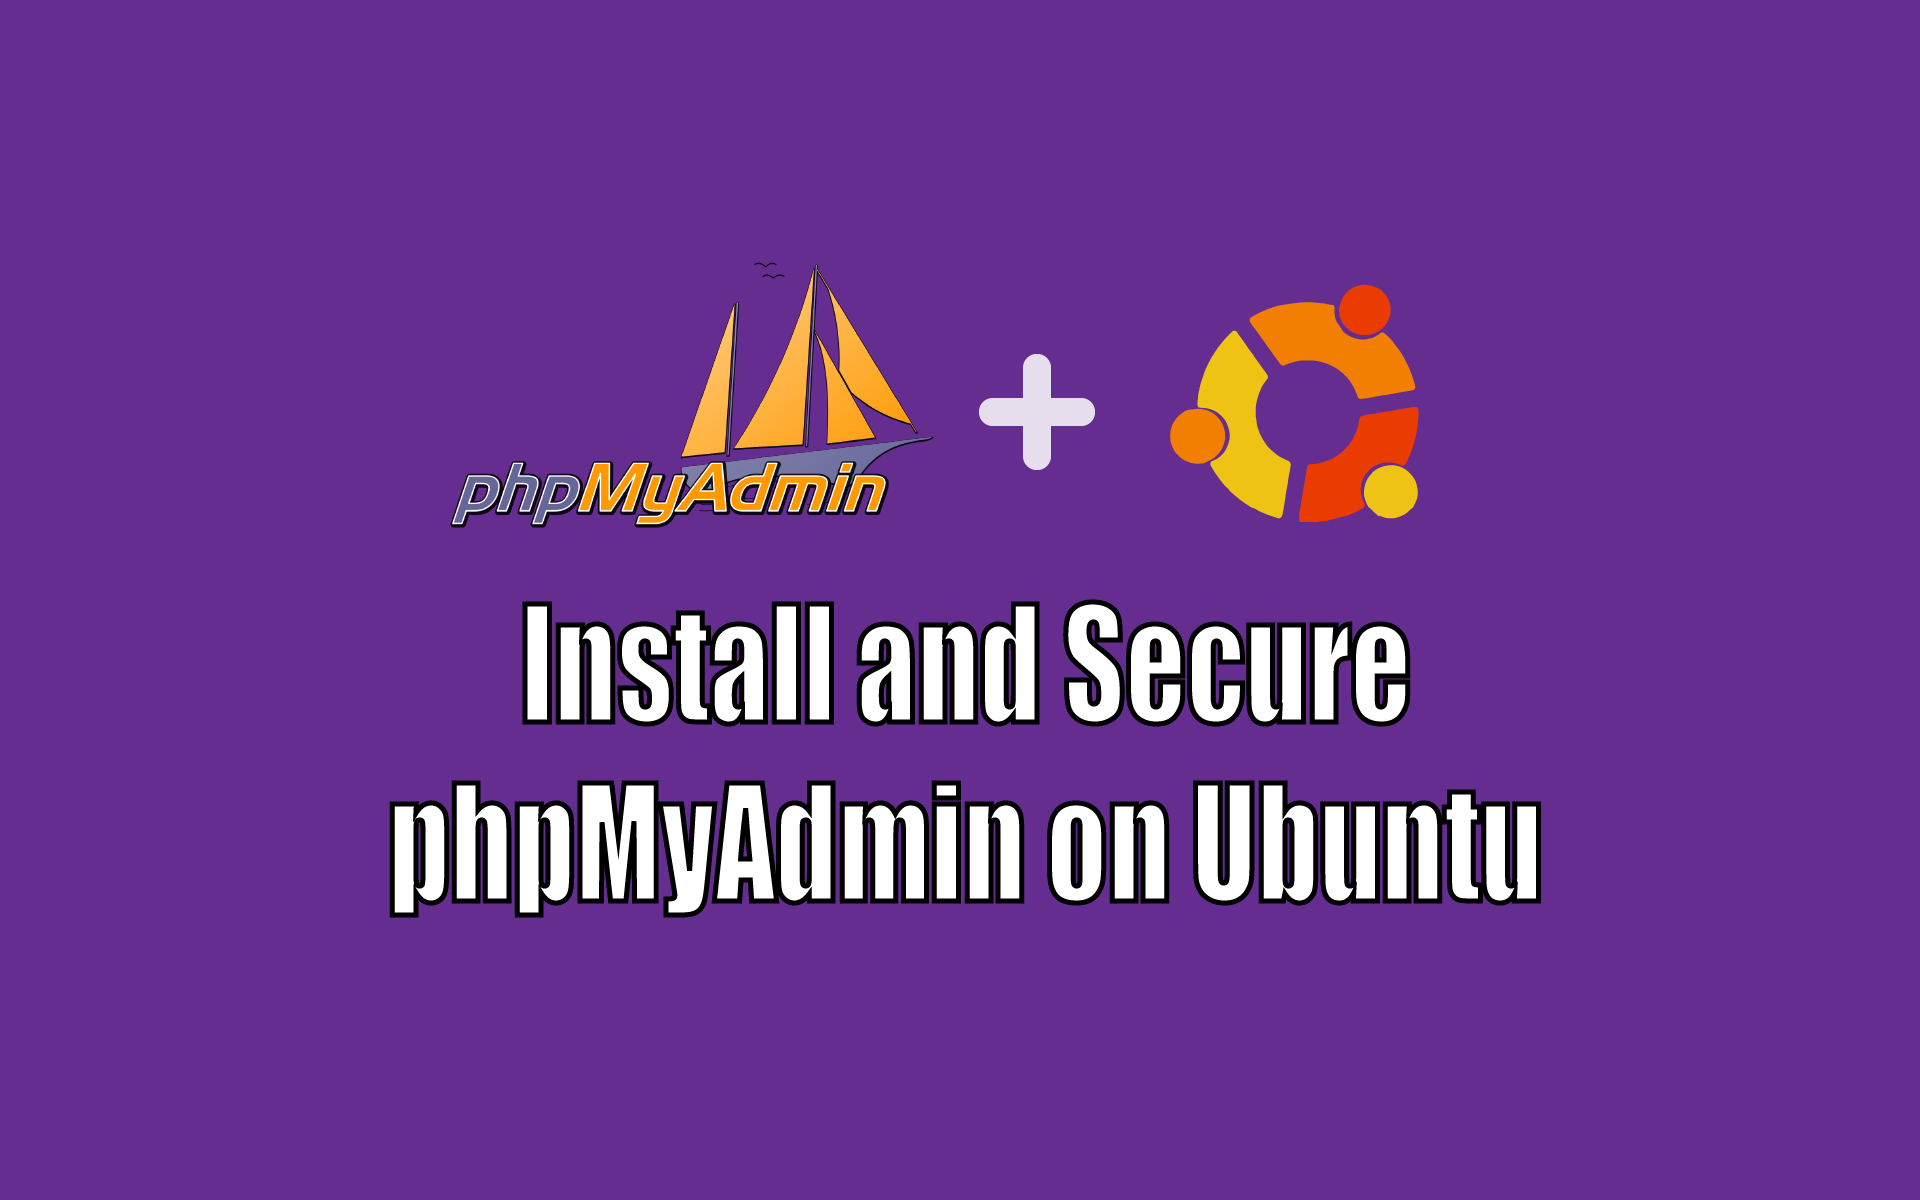 phpmyadmin nginx ubuntu 16.04 server